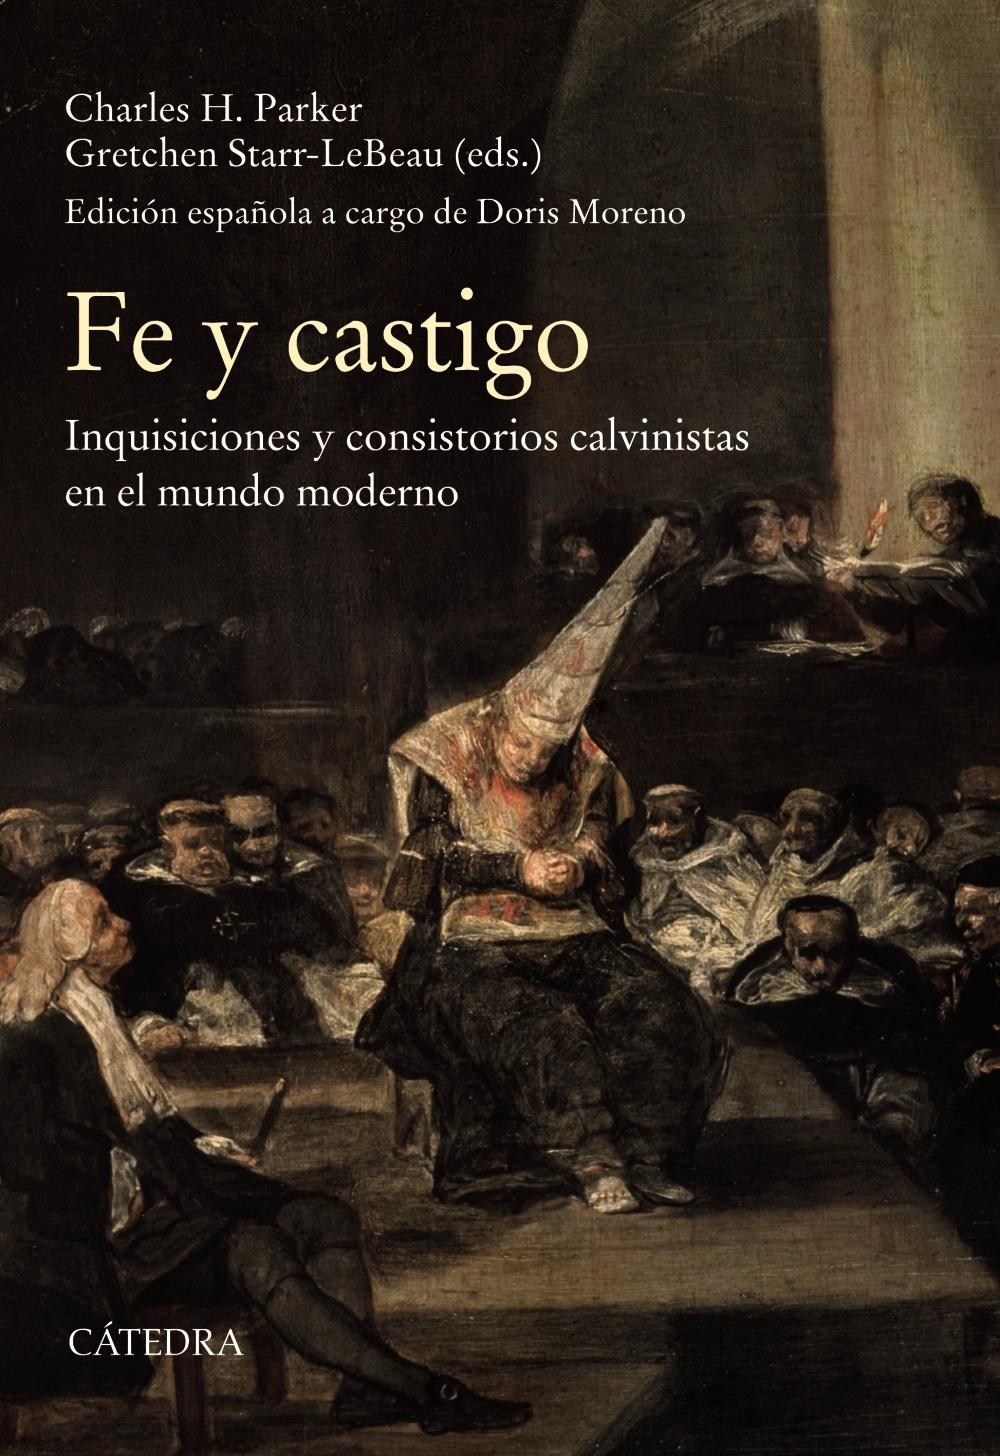 Fe y castigo "Inquisiciones y consistorios calvinistas en el mundo moderno"